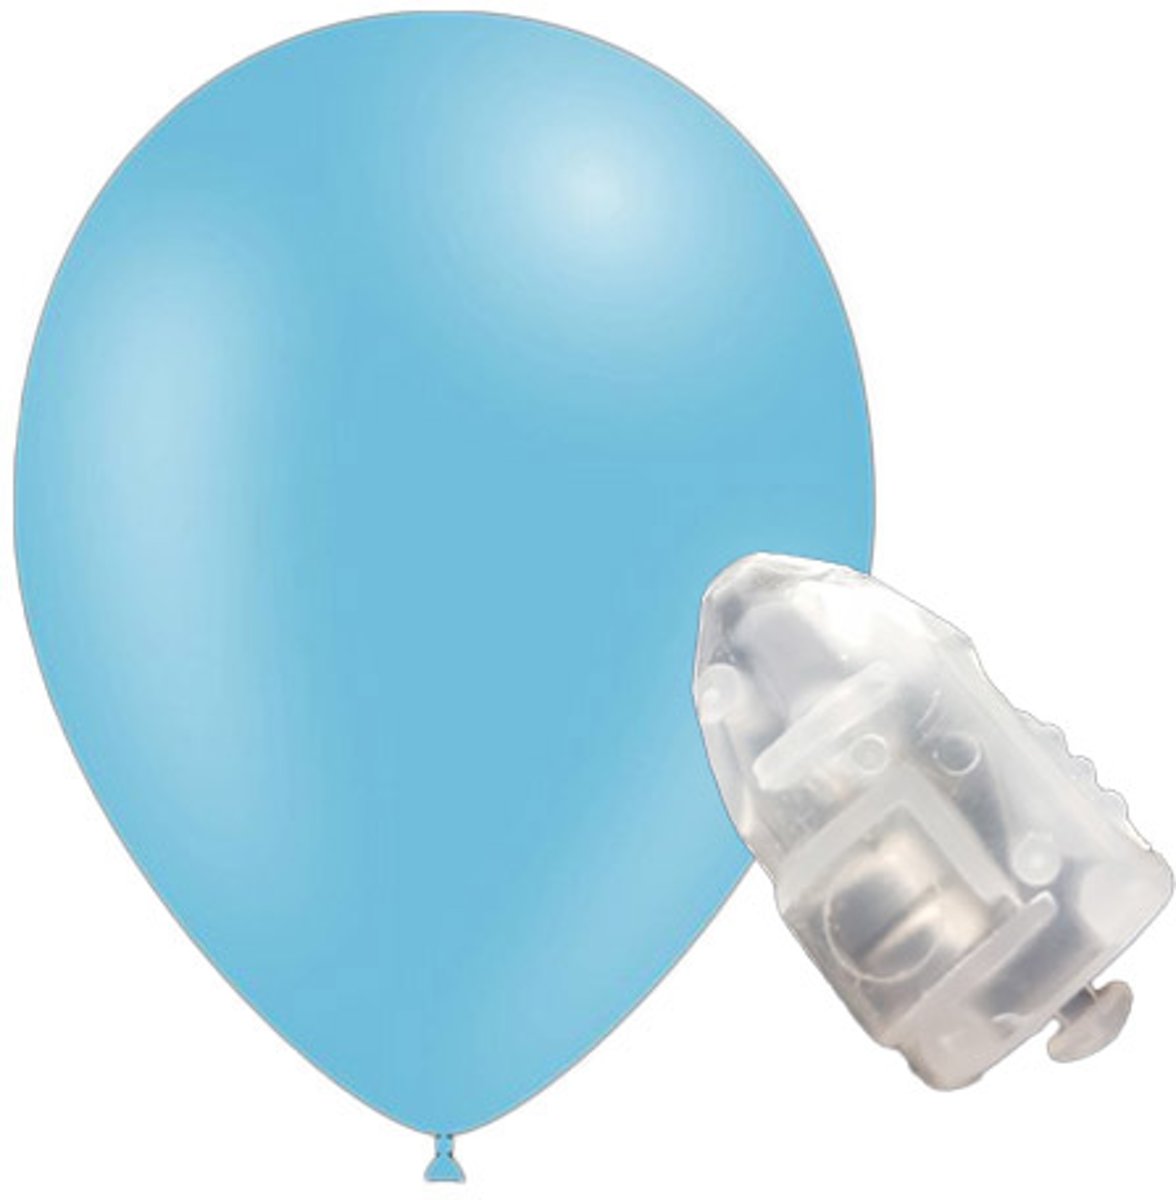 5 stuks ledverlichte Feestballonnen licht blauw 26 cm pastel met losse LED-lampjes